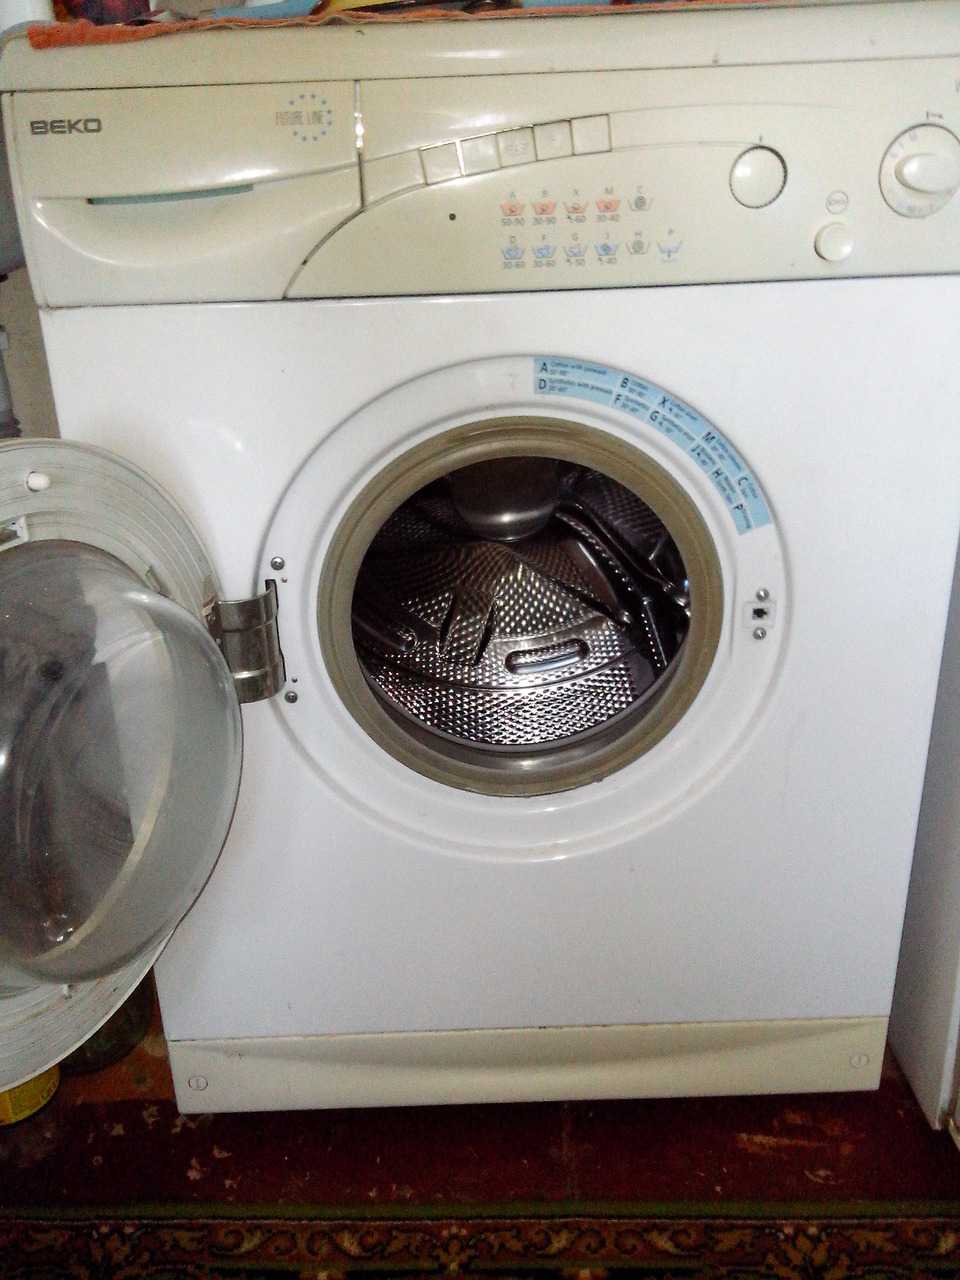 Зависла программа на стиральной машине беко